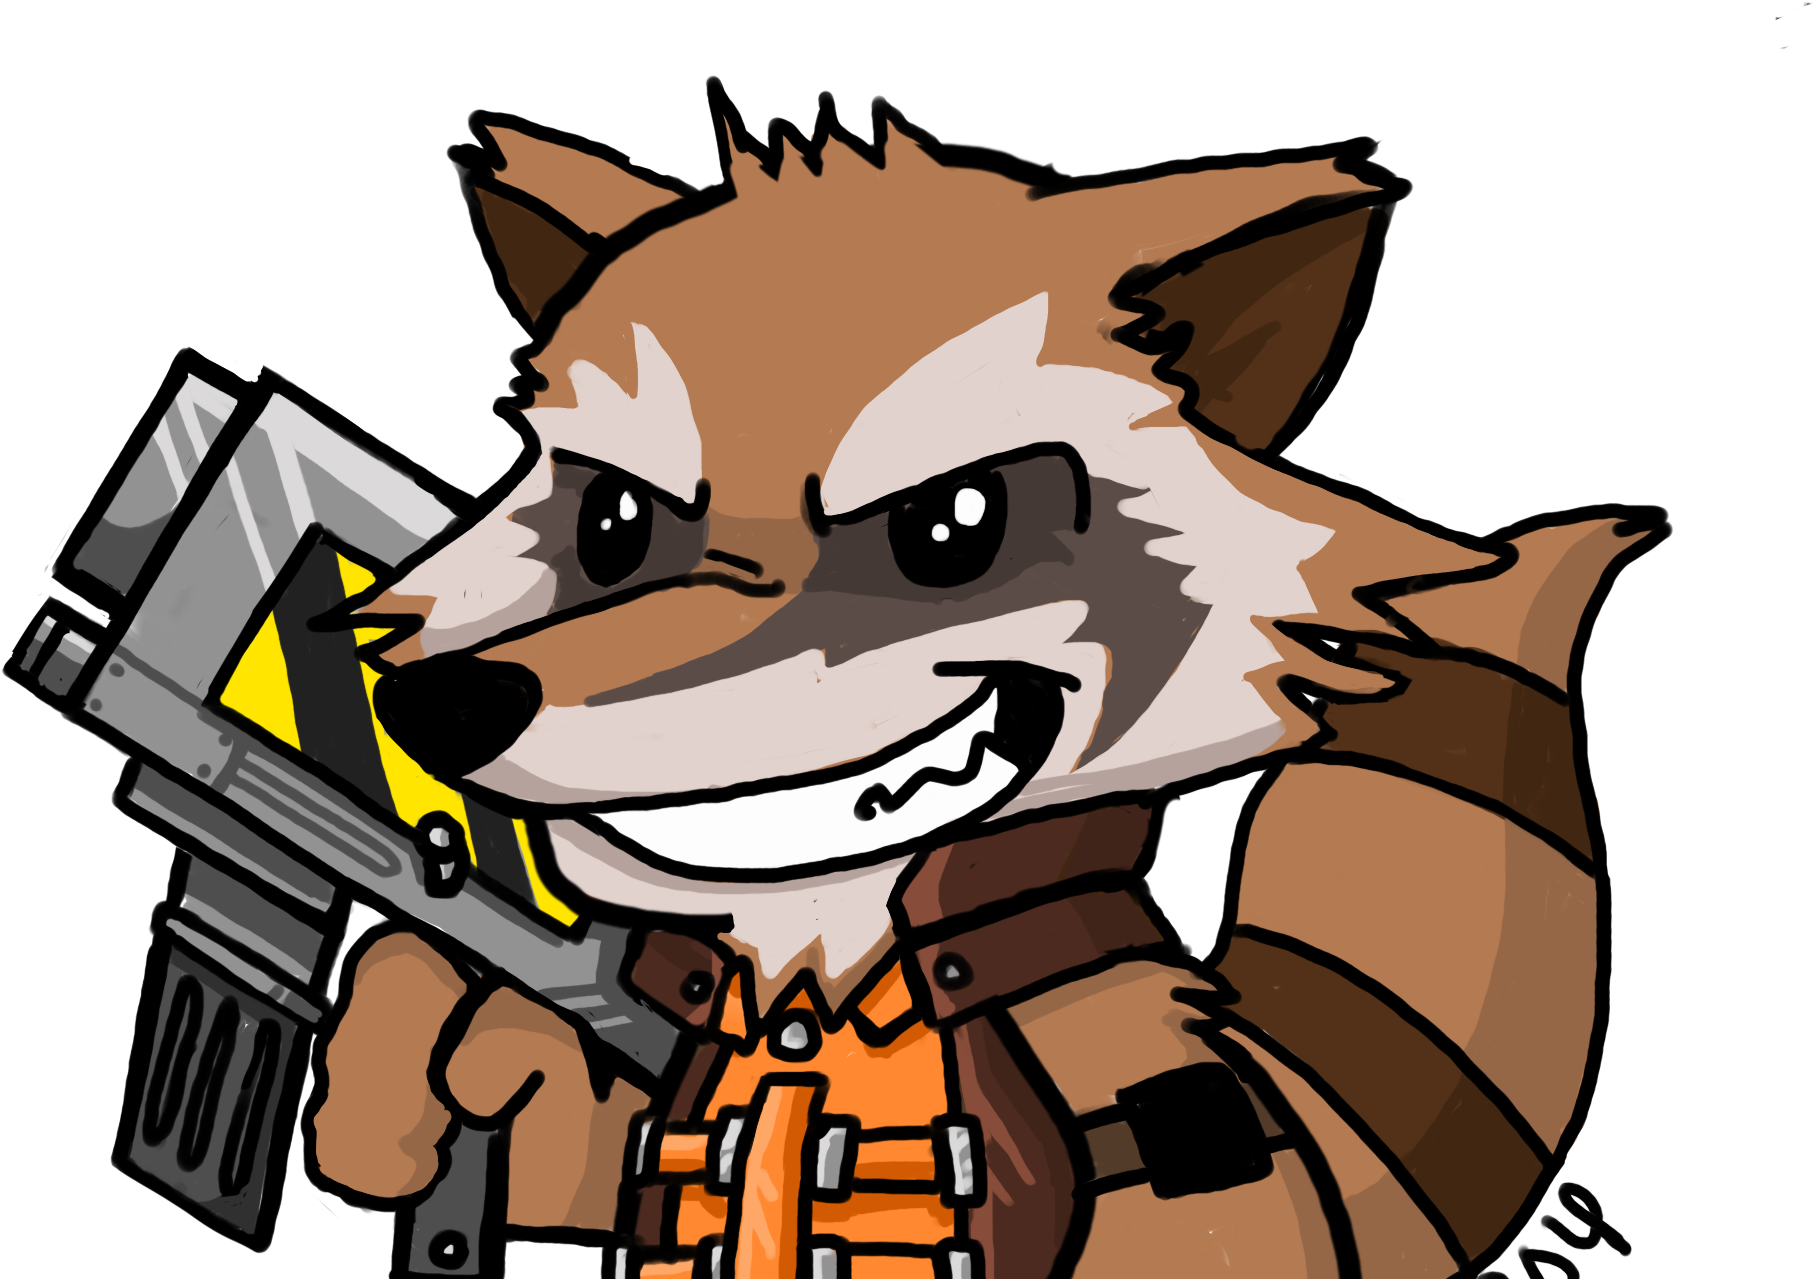 Armed Cartoon Raccoon Character SVG